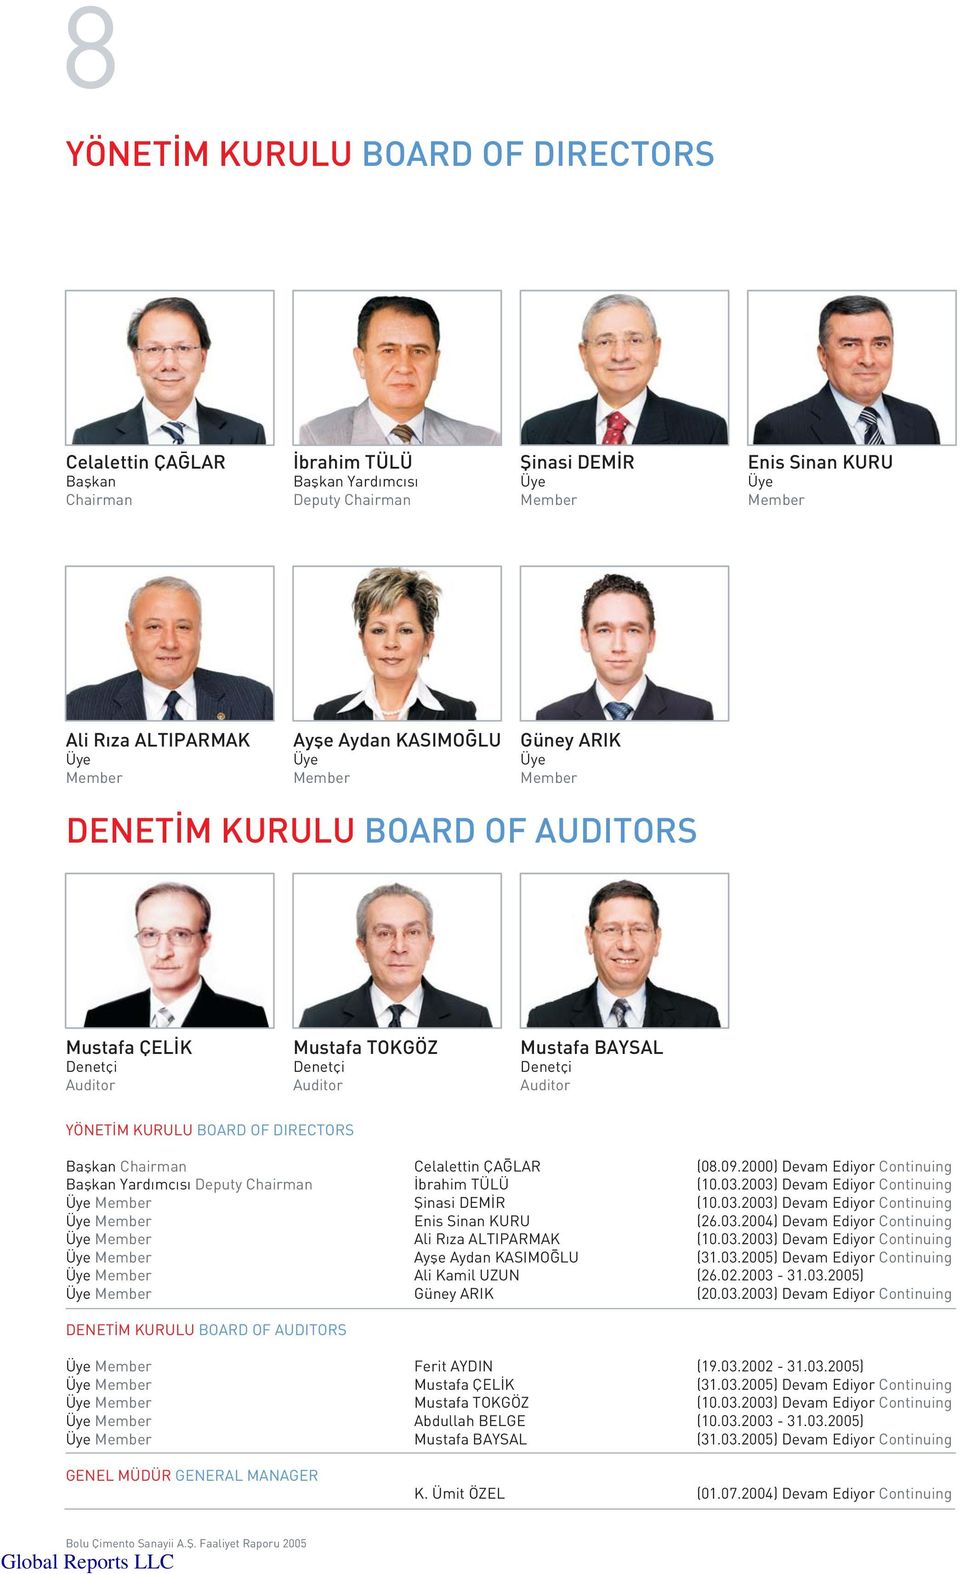 BOARD OF DIRECTORS Baflkan Chairman Celalettin ÇA LAR (08.09.2000) Devam Ediyor Continuing Baflkan Yard mc s Deputy Chairman brahim TÜLÜ (10.03.